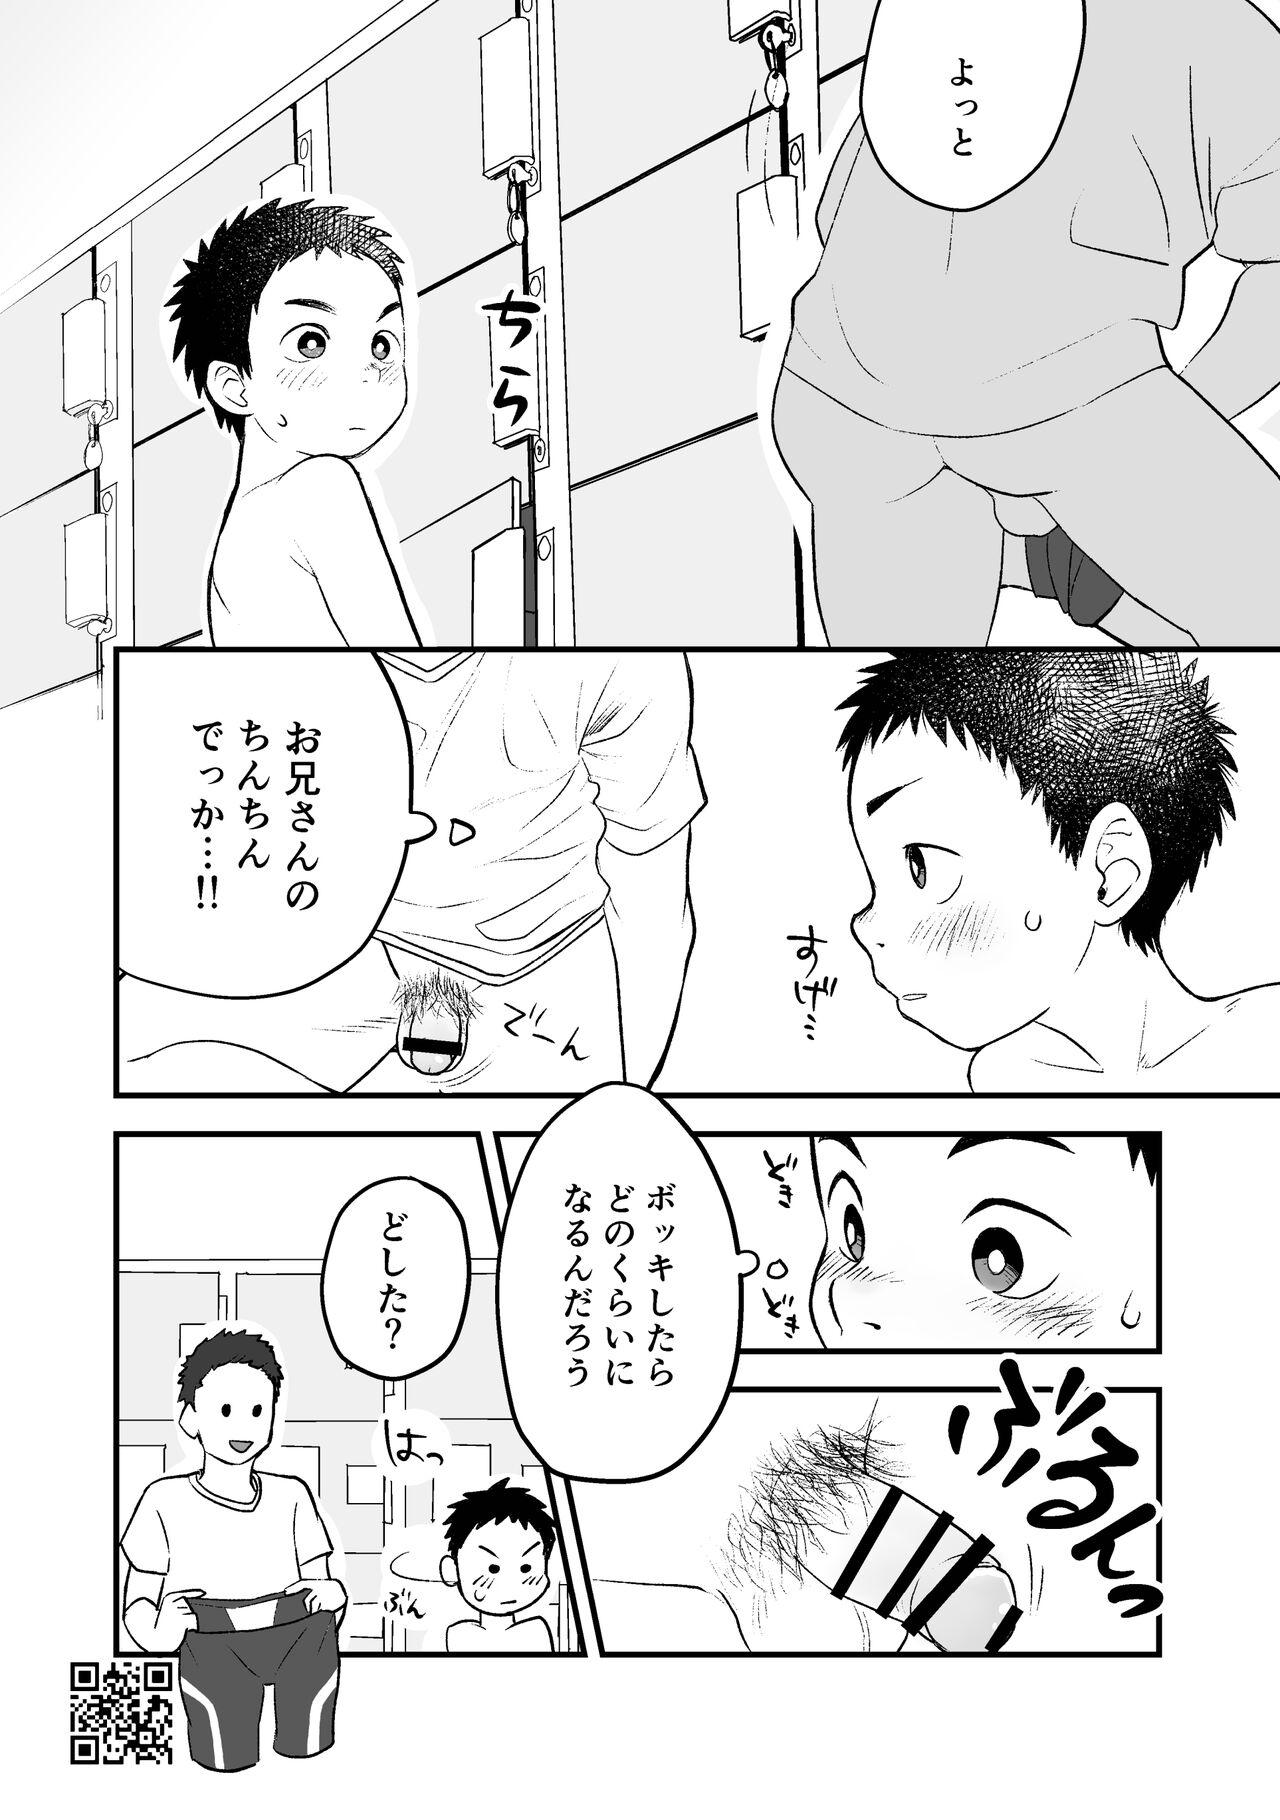 Thick Himitsu no Suiyoubi Matome - Original Boob - Page 12